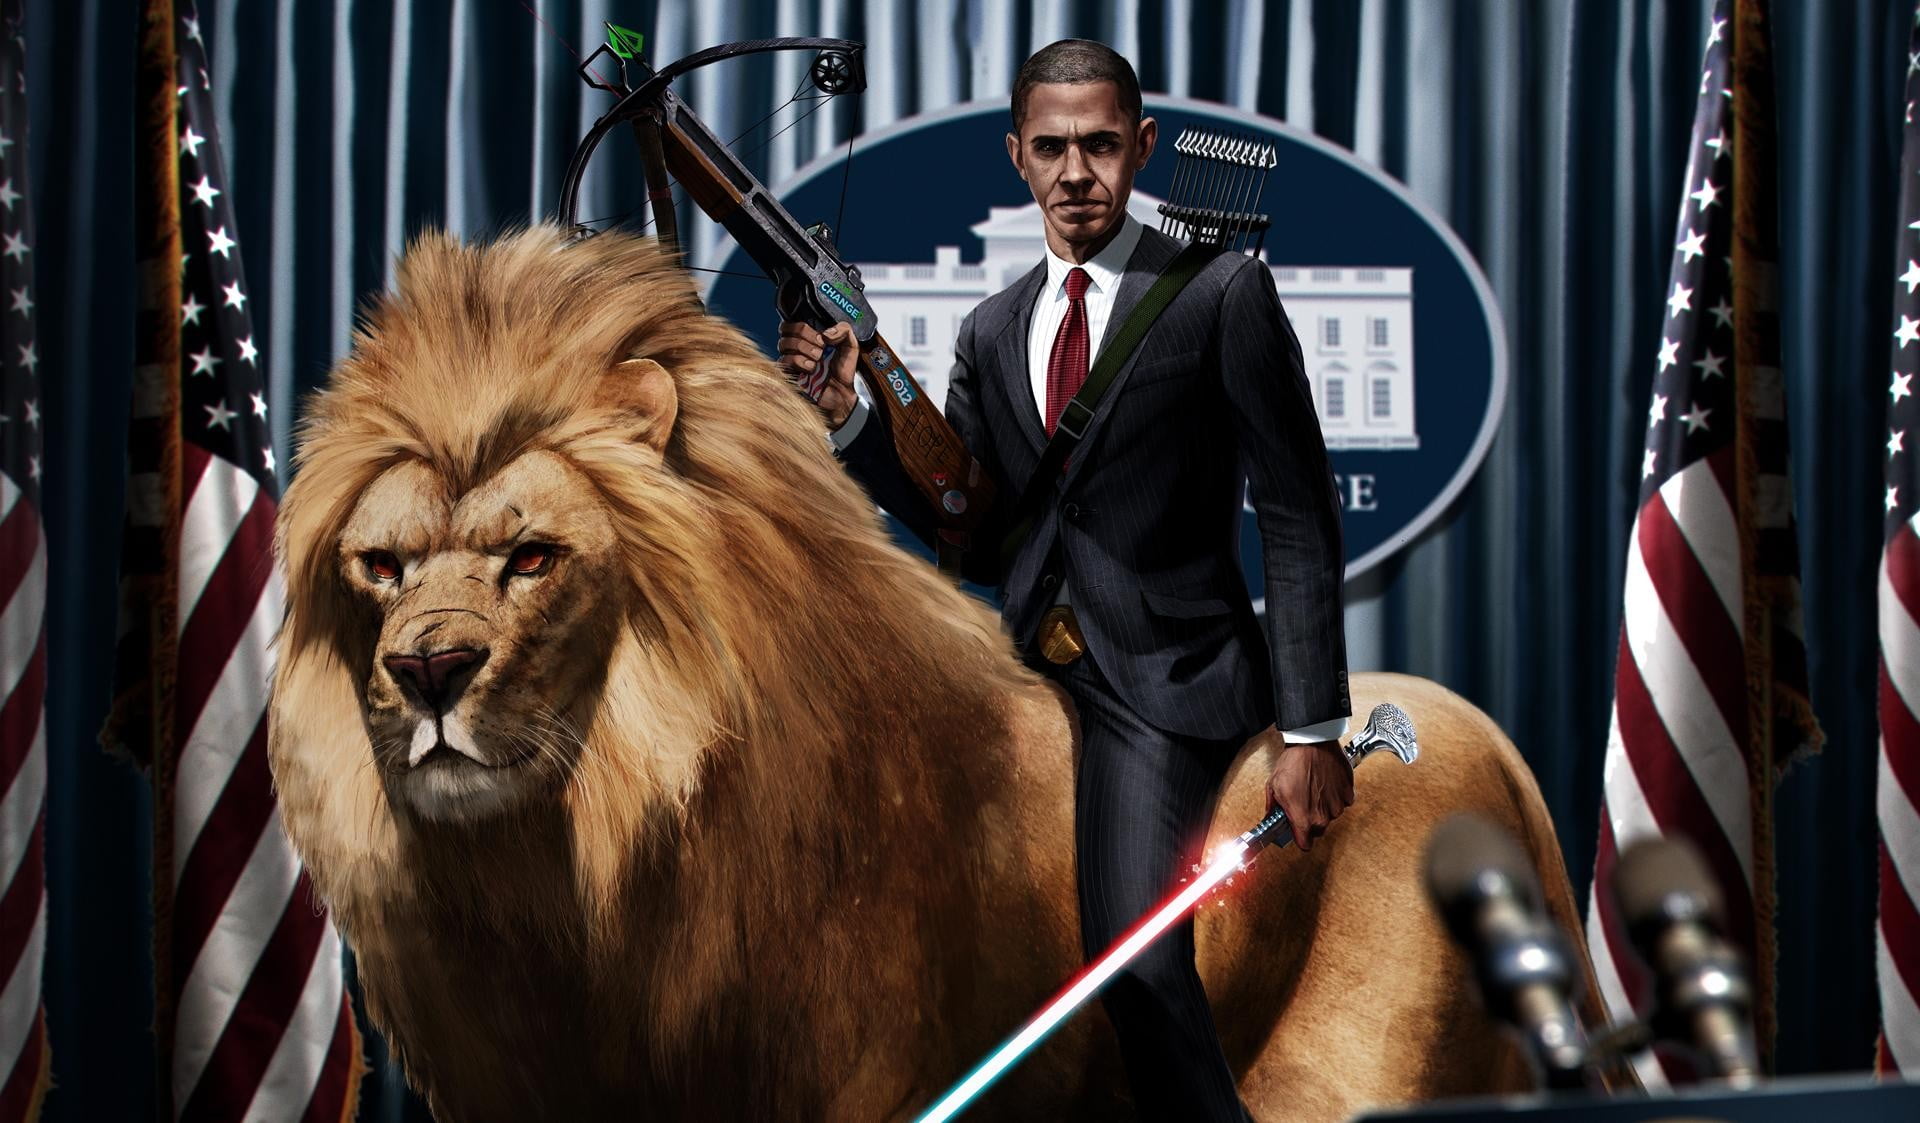 Barack Obama and tiger painting, digital art, artwork, lightsaber